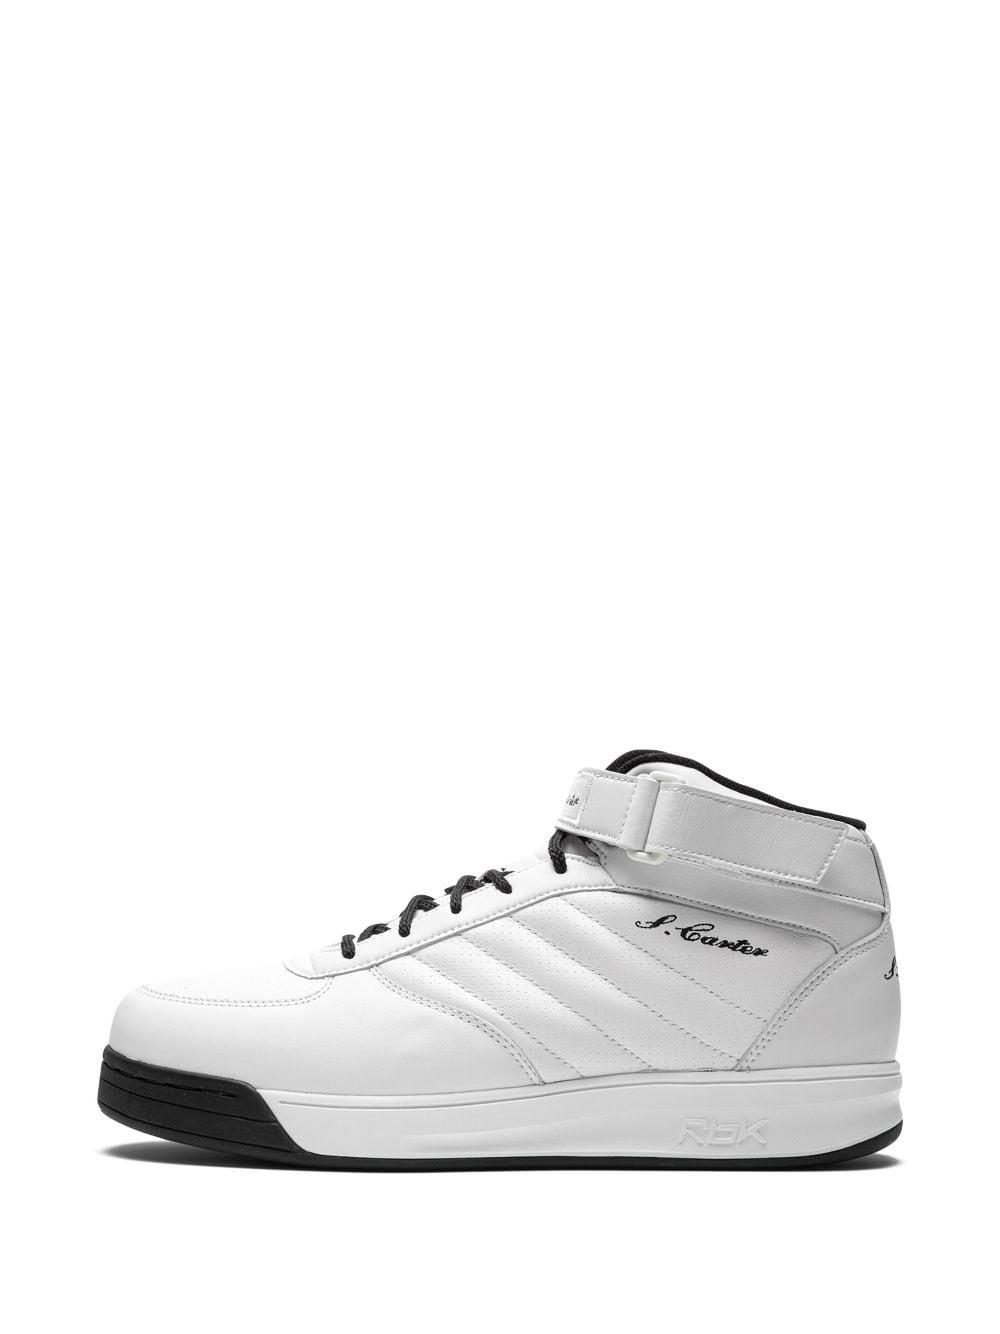 Reebok S. Carter Mid "white/black" Sneakers for Men | Lyst